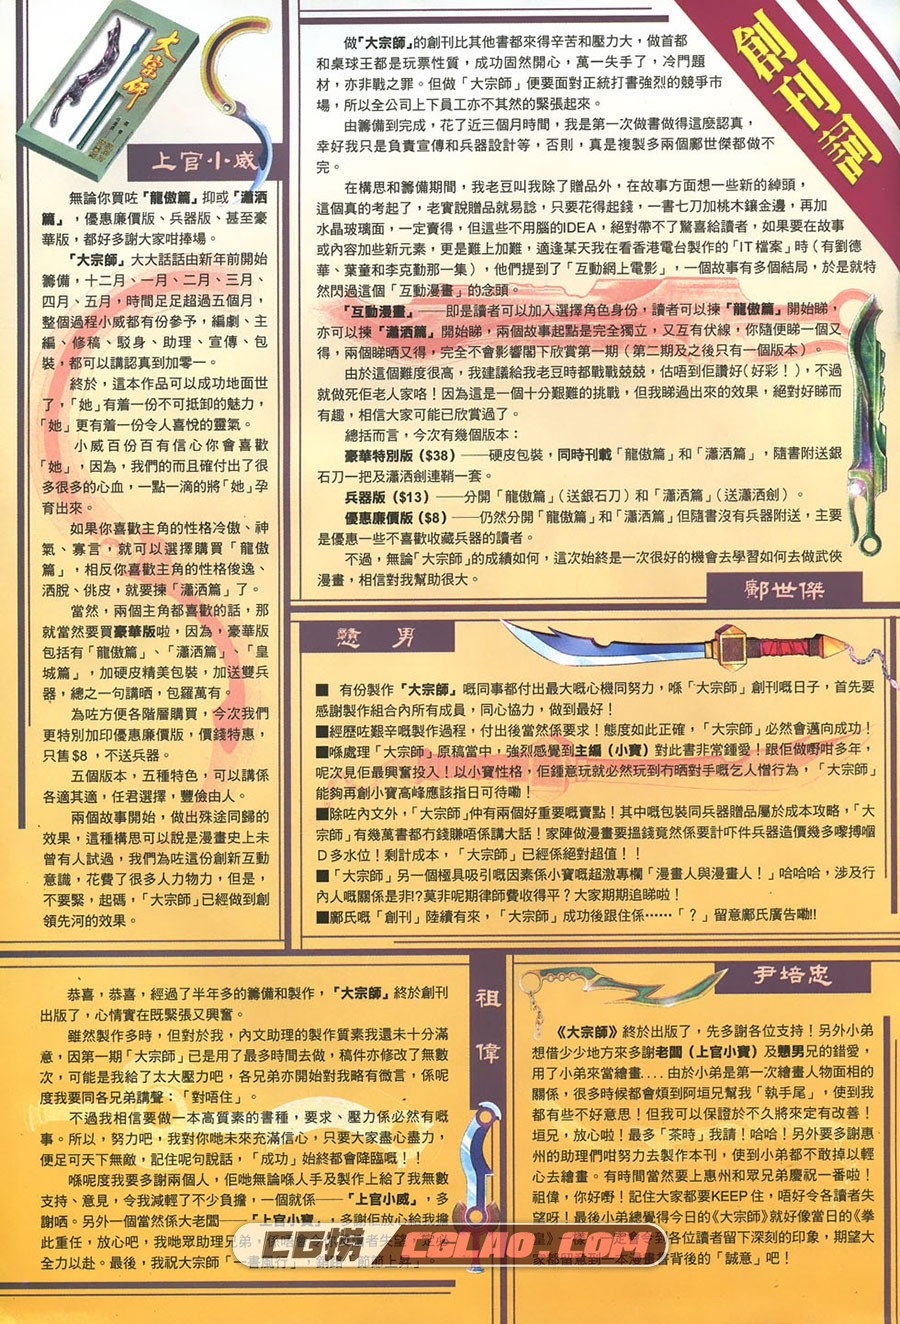 大宗师 上官小宝 1-15册 漫画全集下载 百度网盘,dzs01-03.jpg